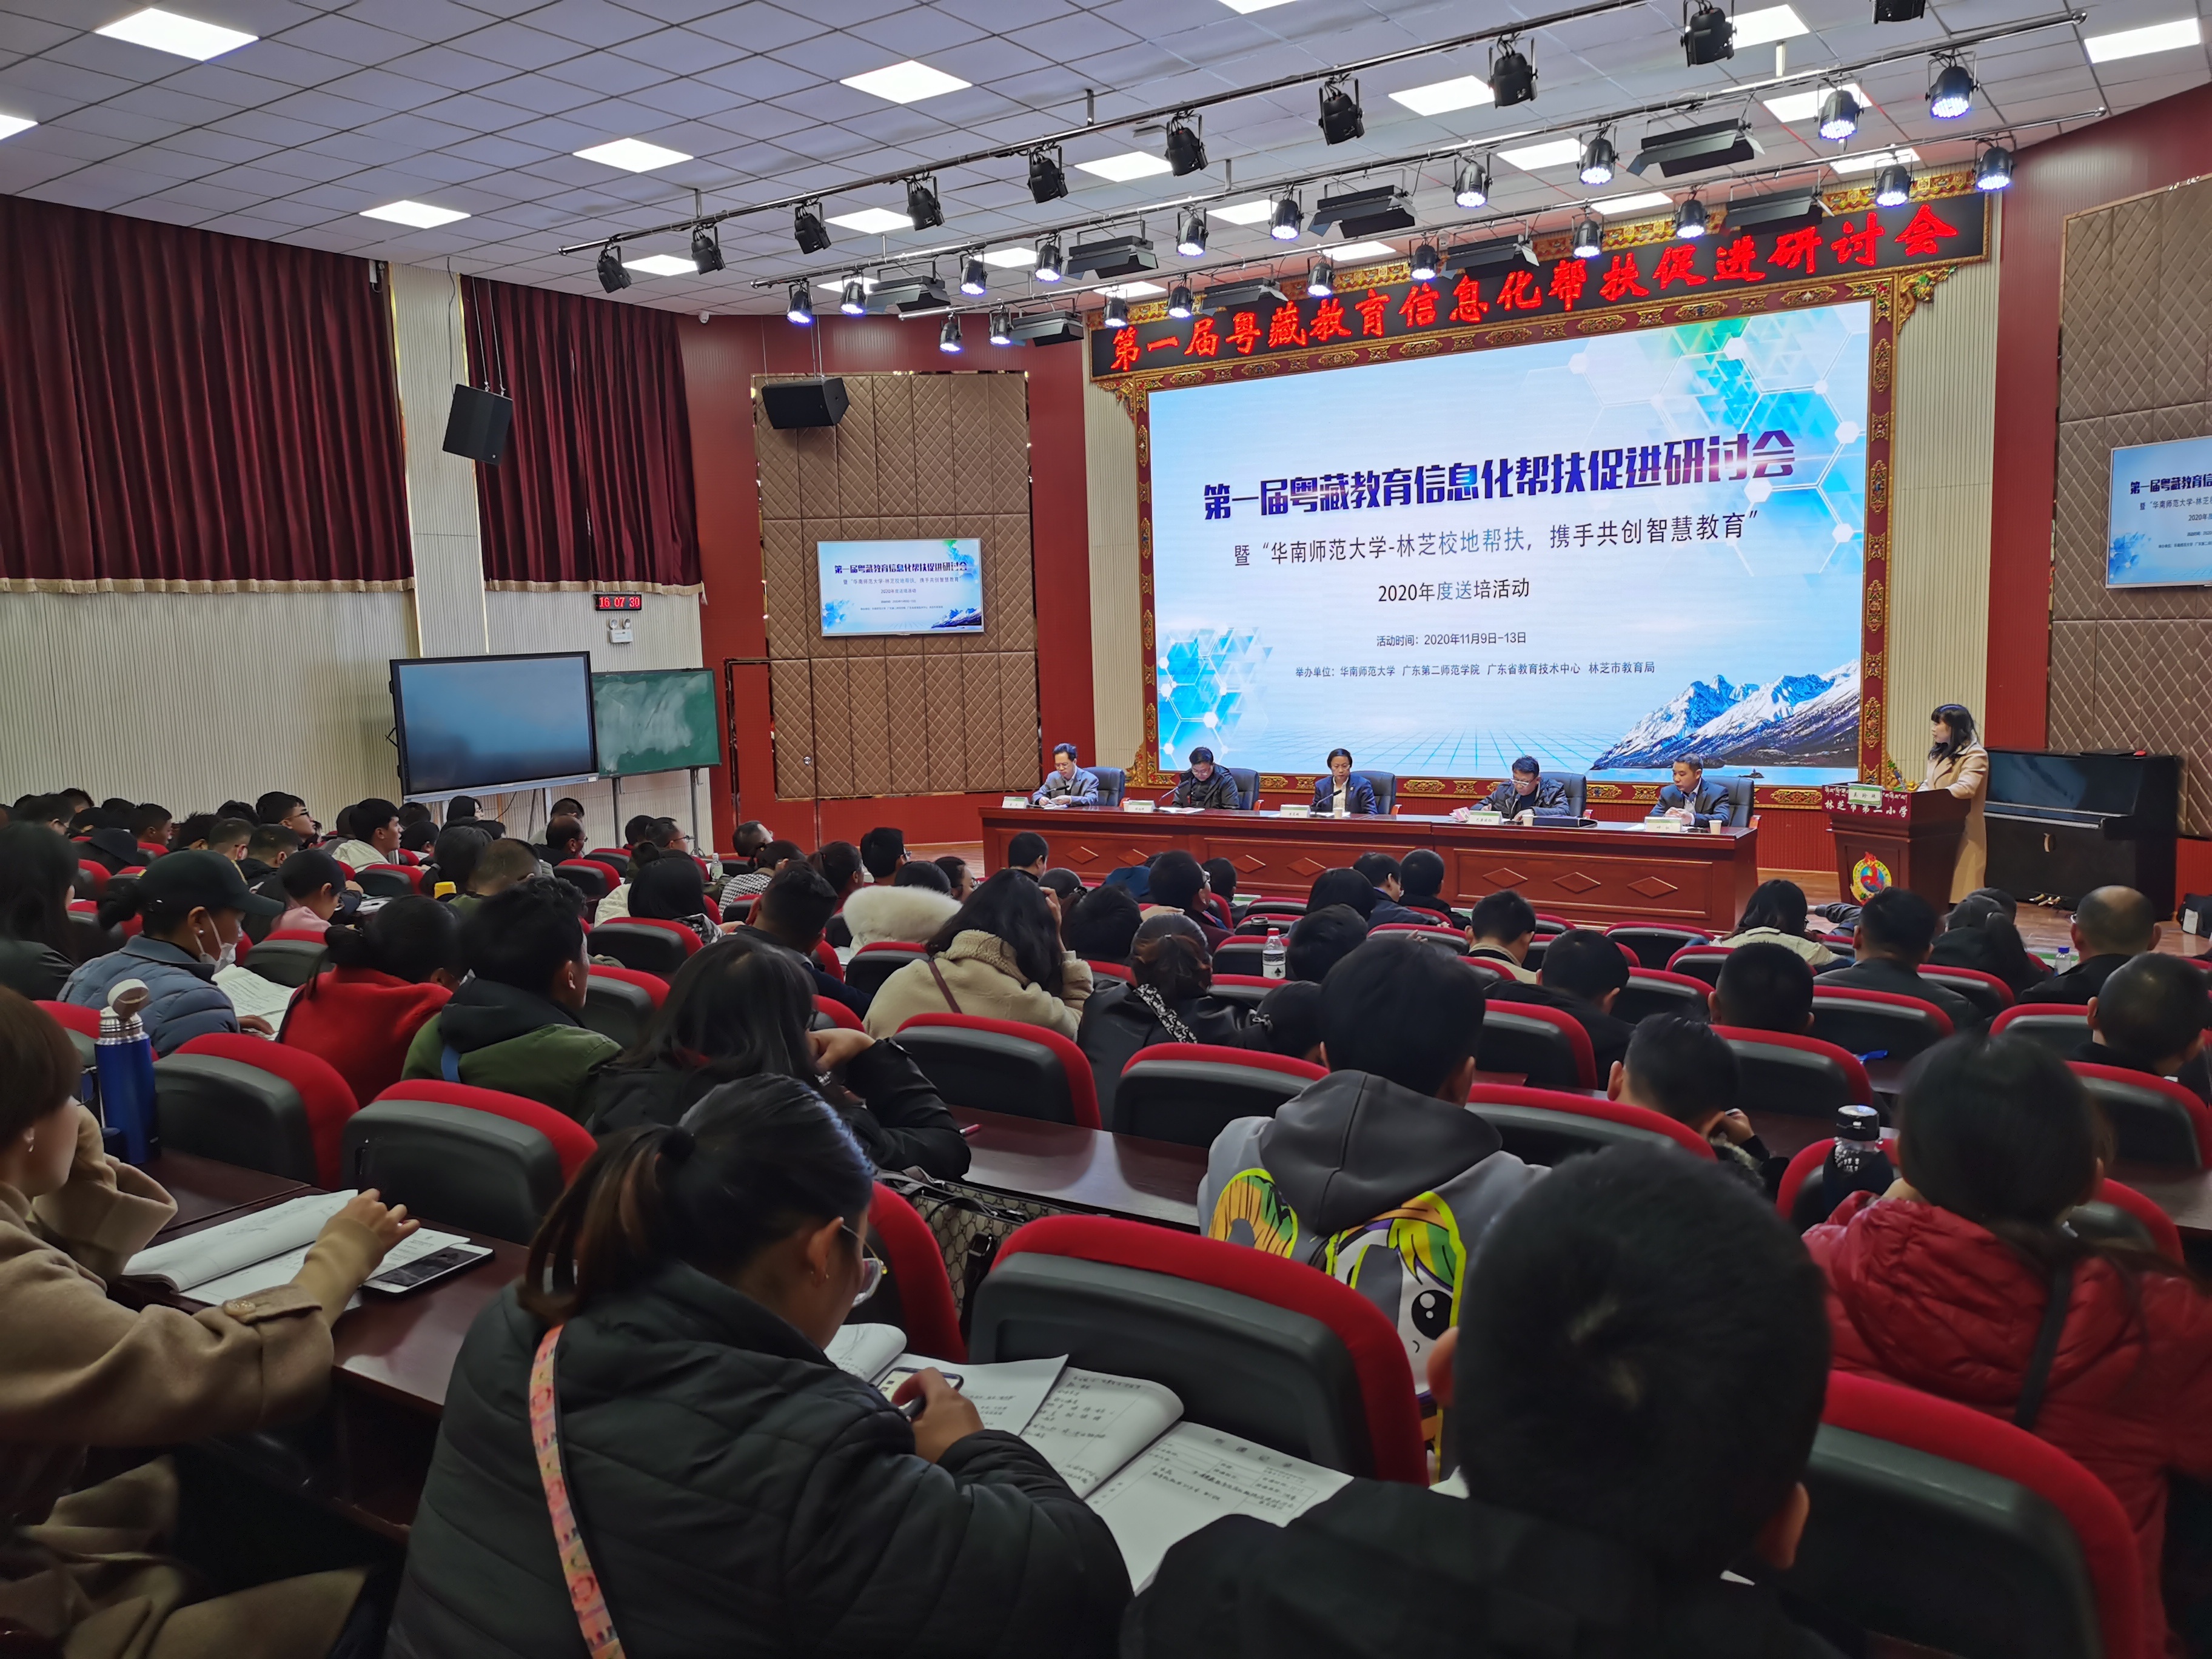 第一届粤藏教育信息化帮扶促进研讨会开幕式。张彦 摄